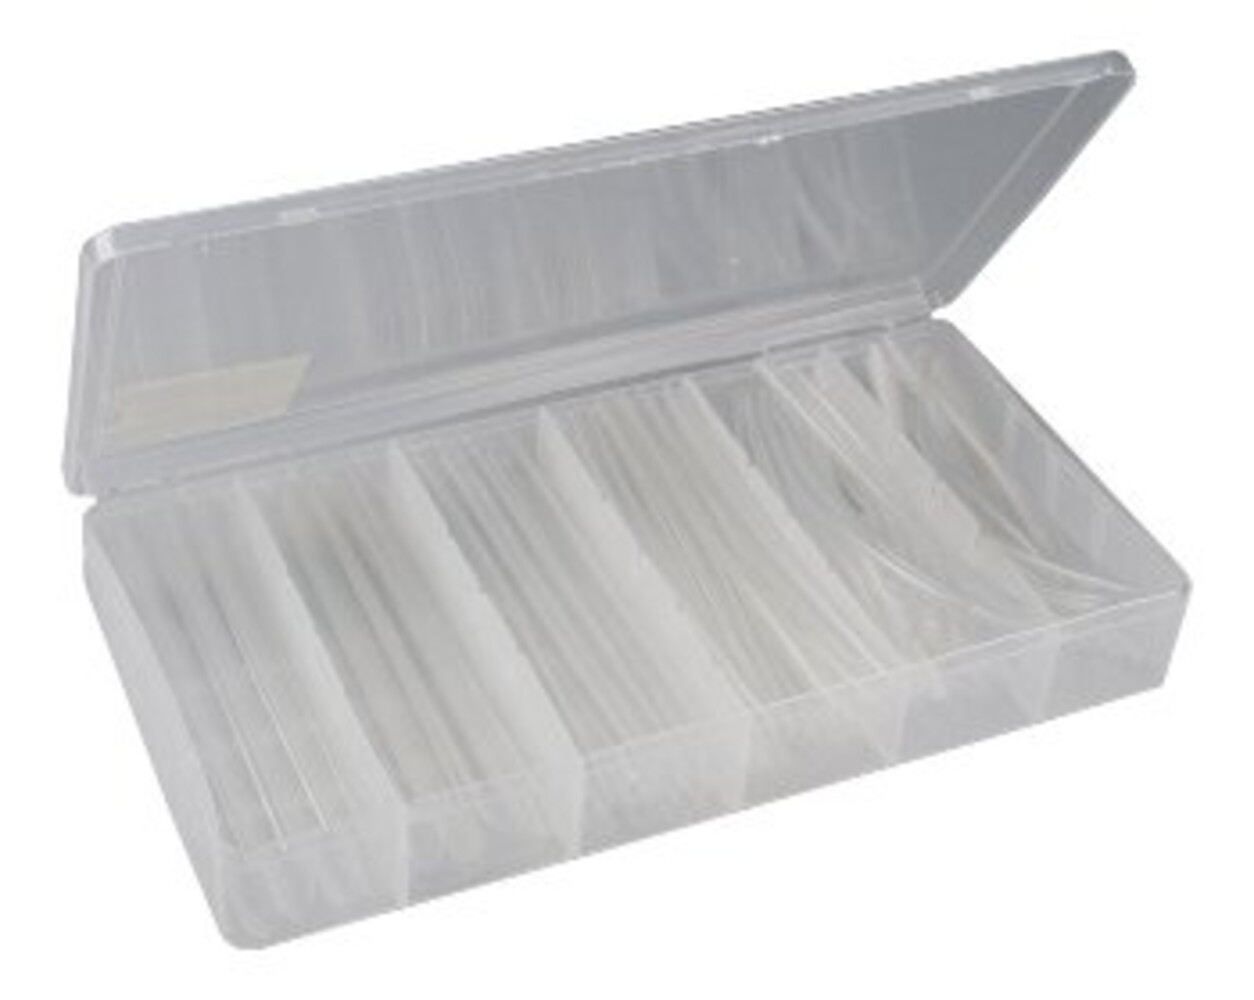 Transparentes isolierendes Material von ChiliTec in einer praktischen Box